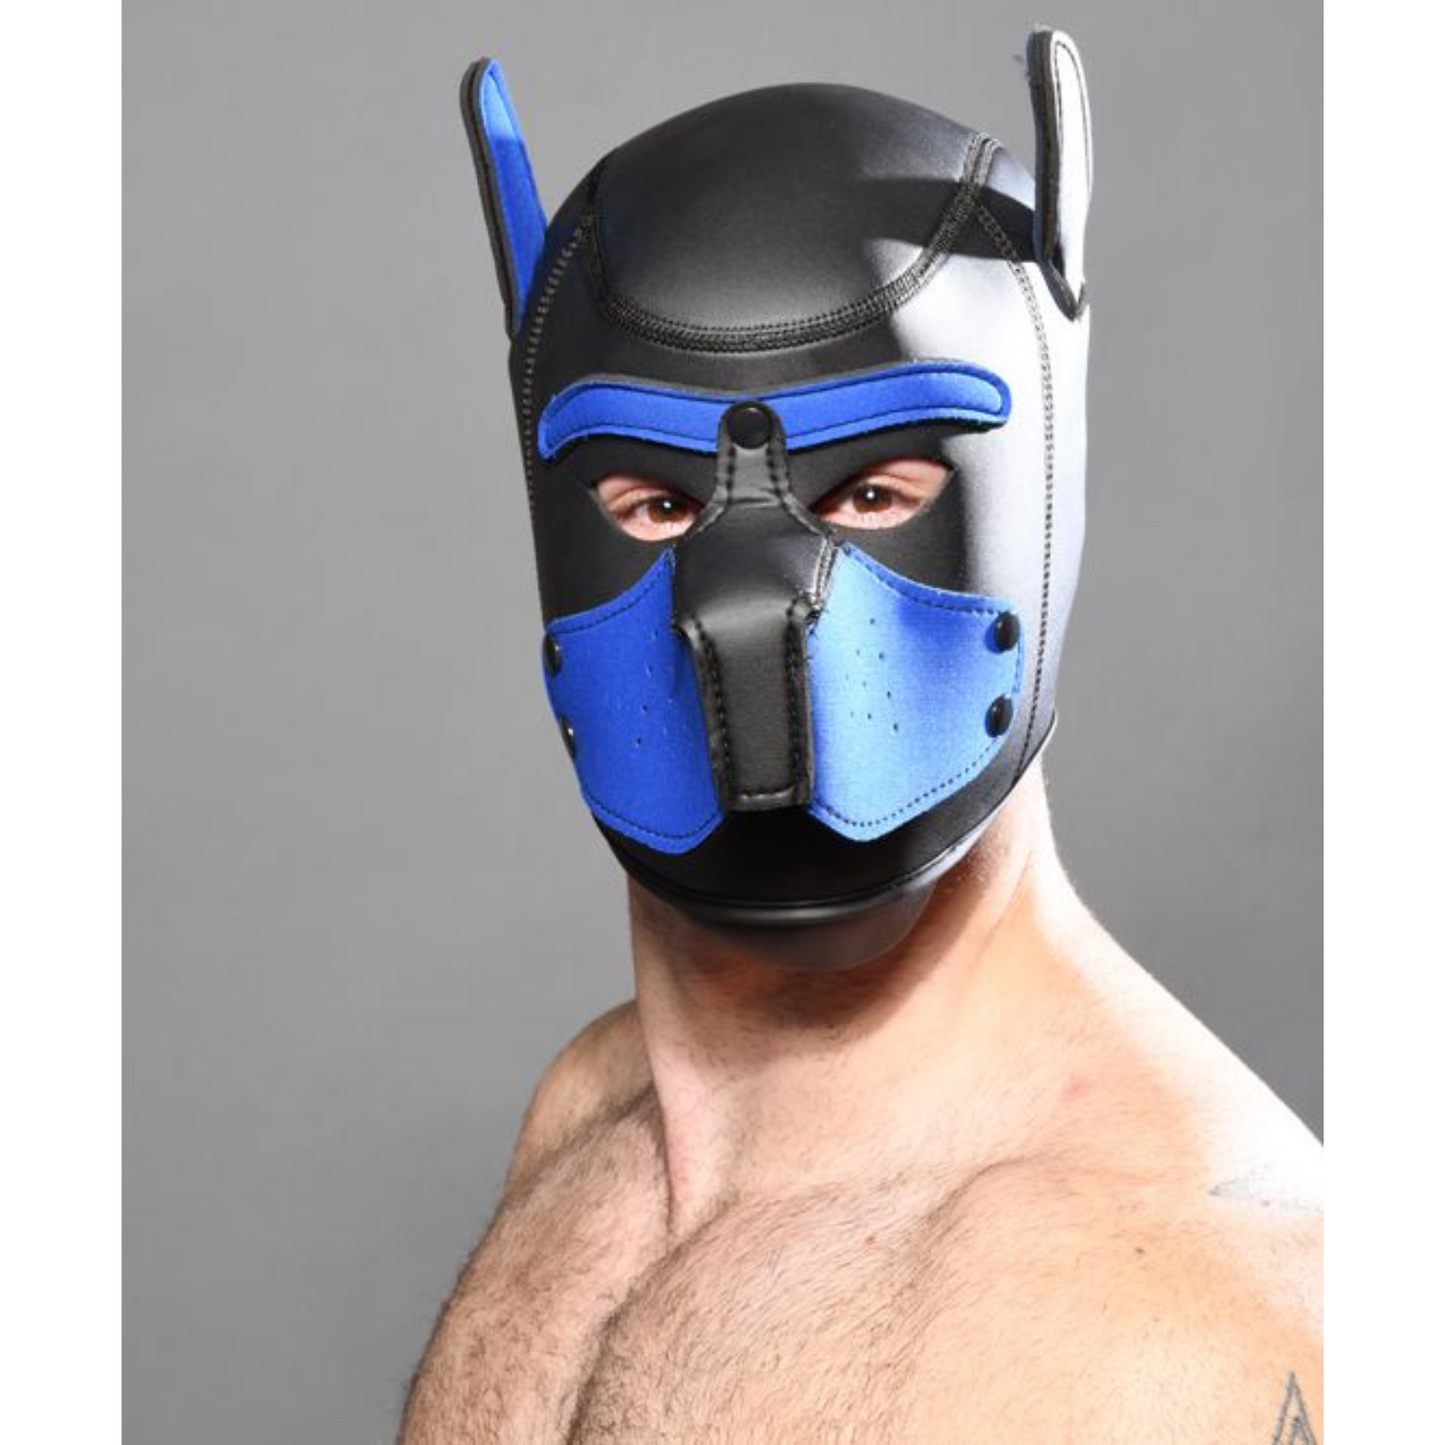 Zwart met blauw puppy fetish masker voor mannen ontworpen door Andrew Christian en te koop bij Flavourez.